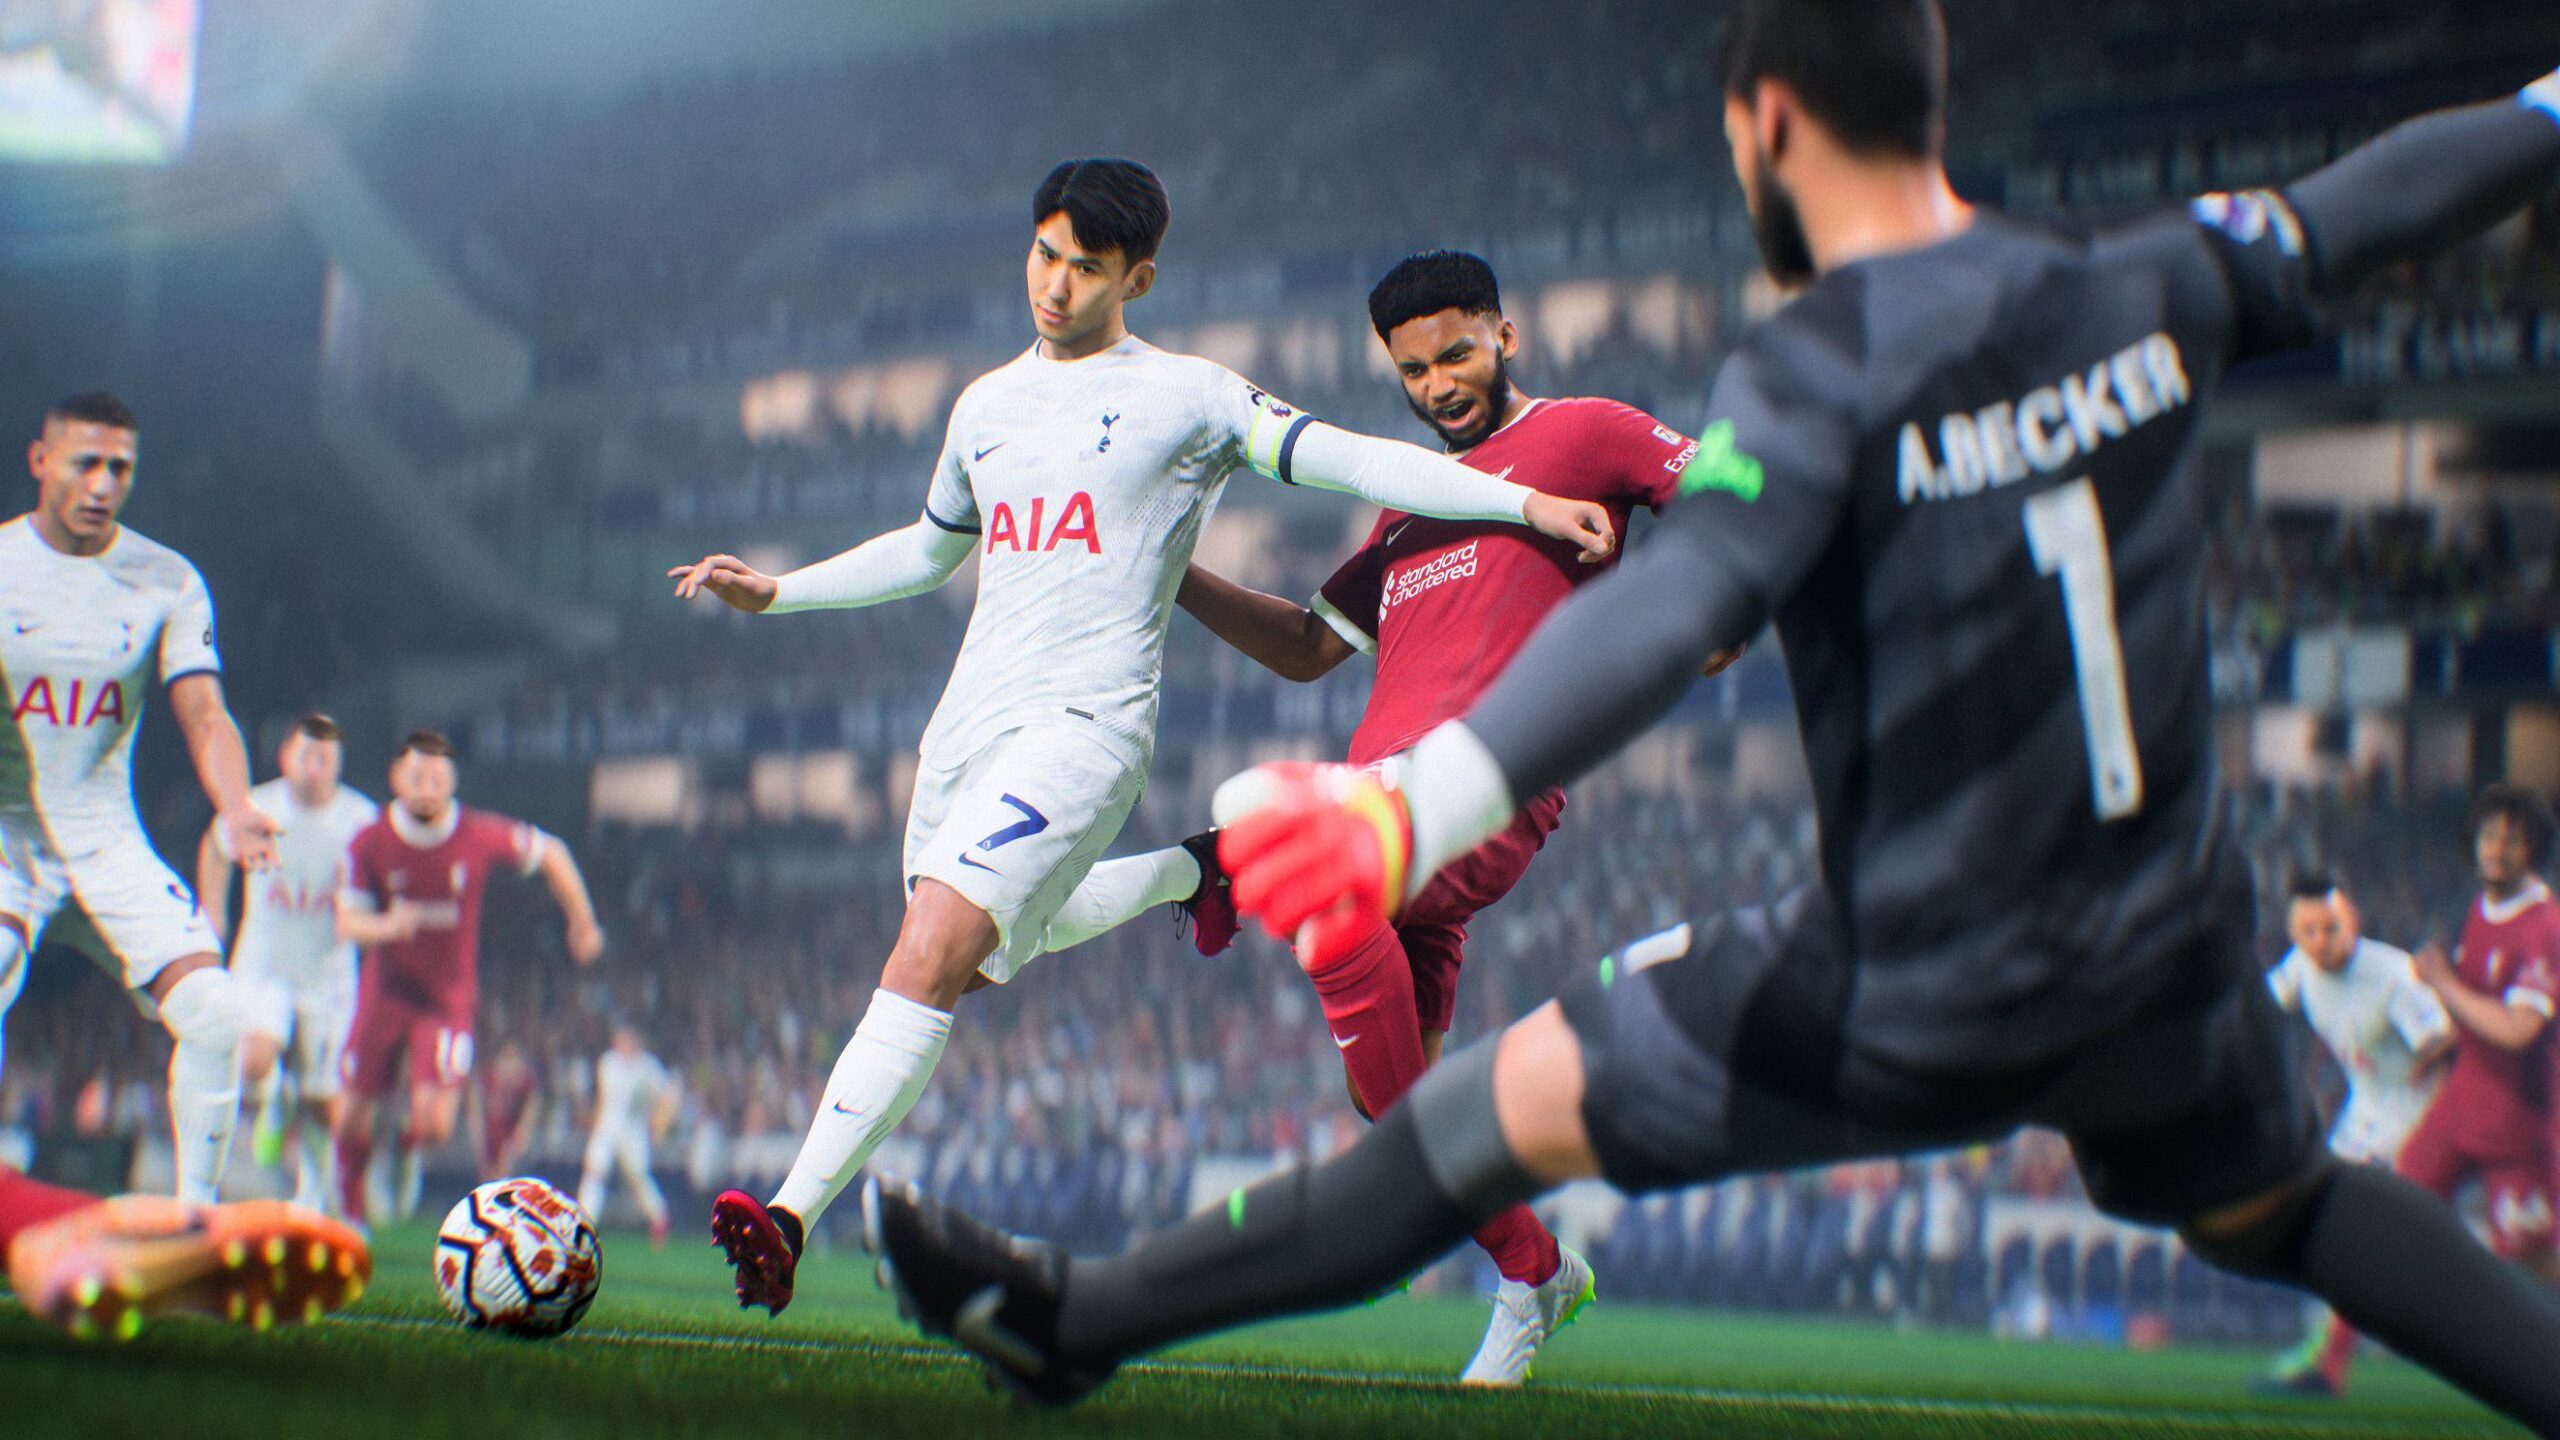 EA Sports FC 24: Começa uma nova era para o 'The World's Game